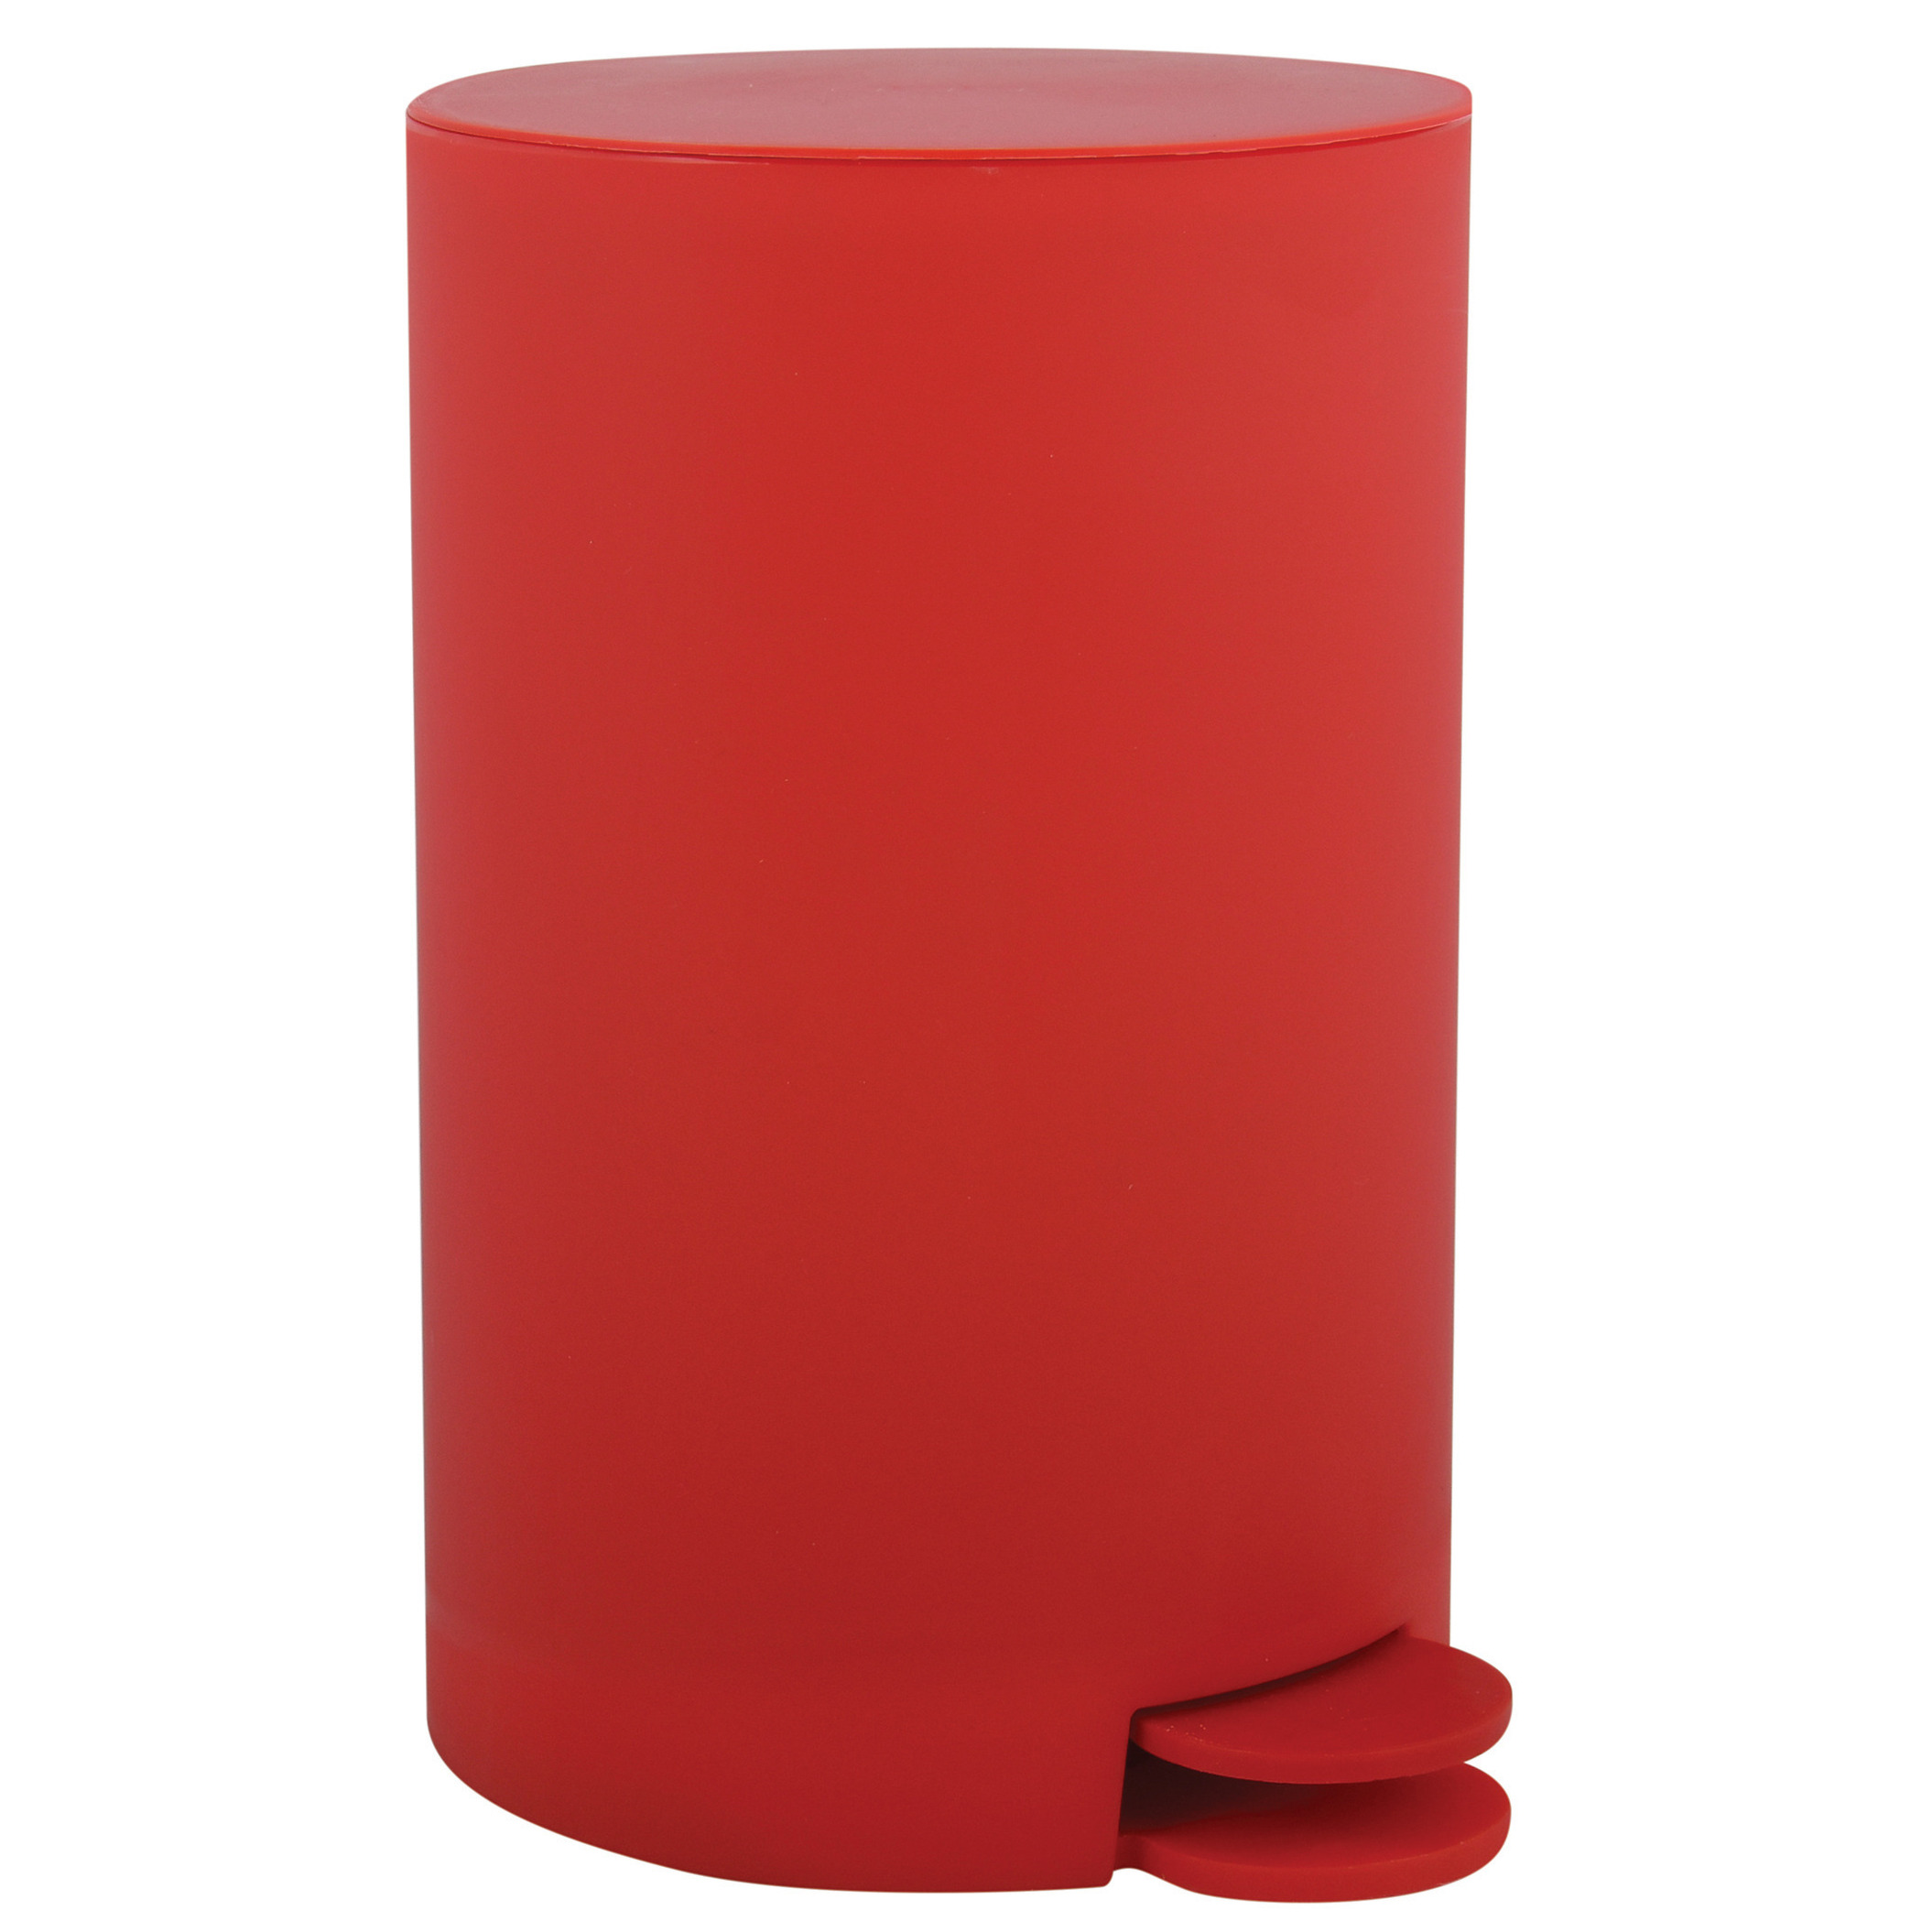 Prullenbak-pedaalemmer kunststof rood 3 liter 15 x 27 cm Badkamer-toilet